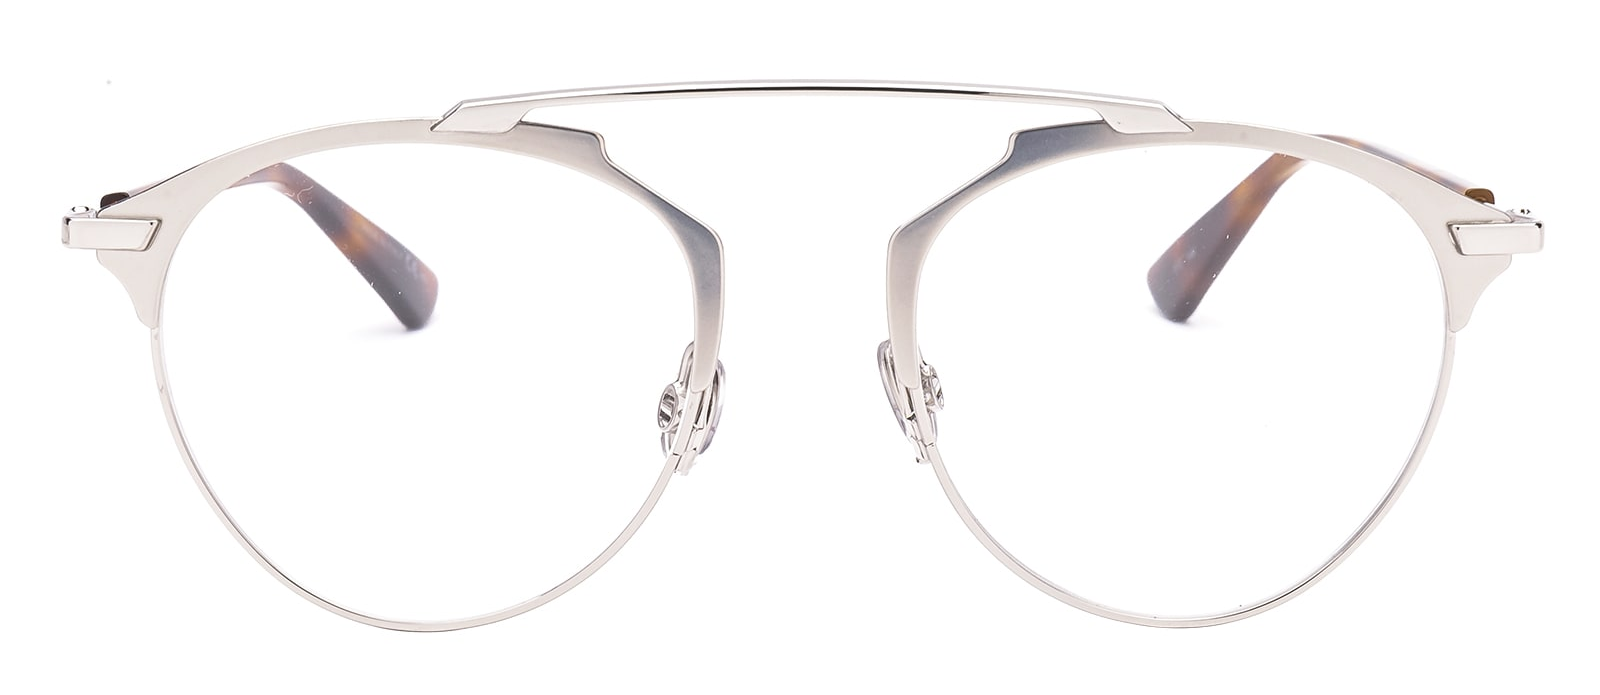 TAVAT frame glasses